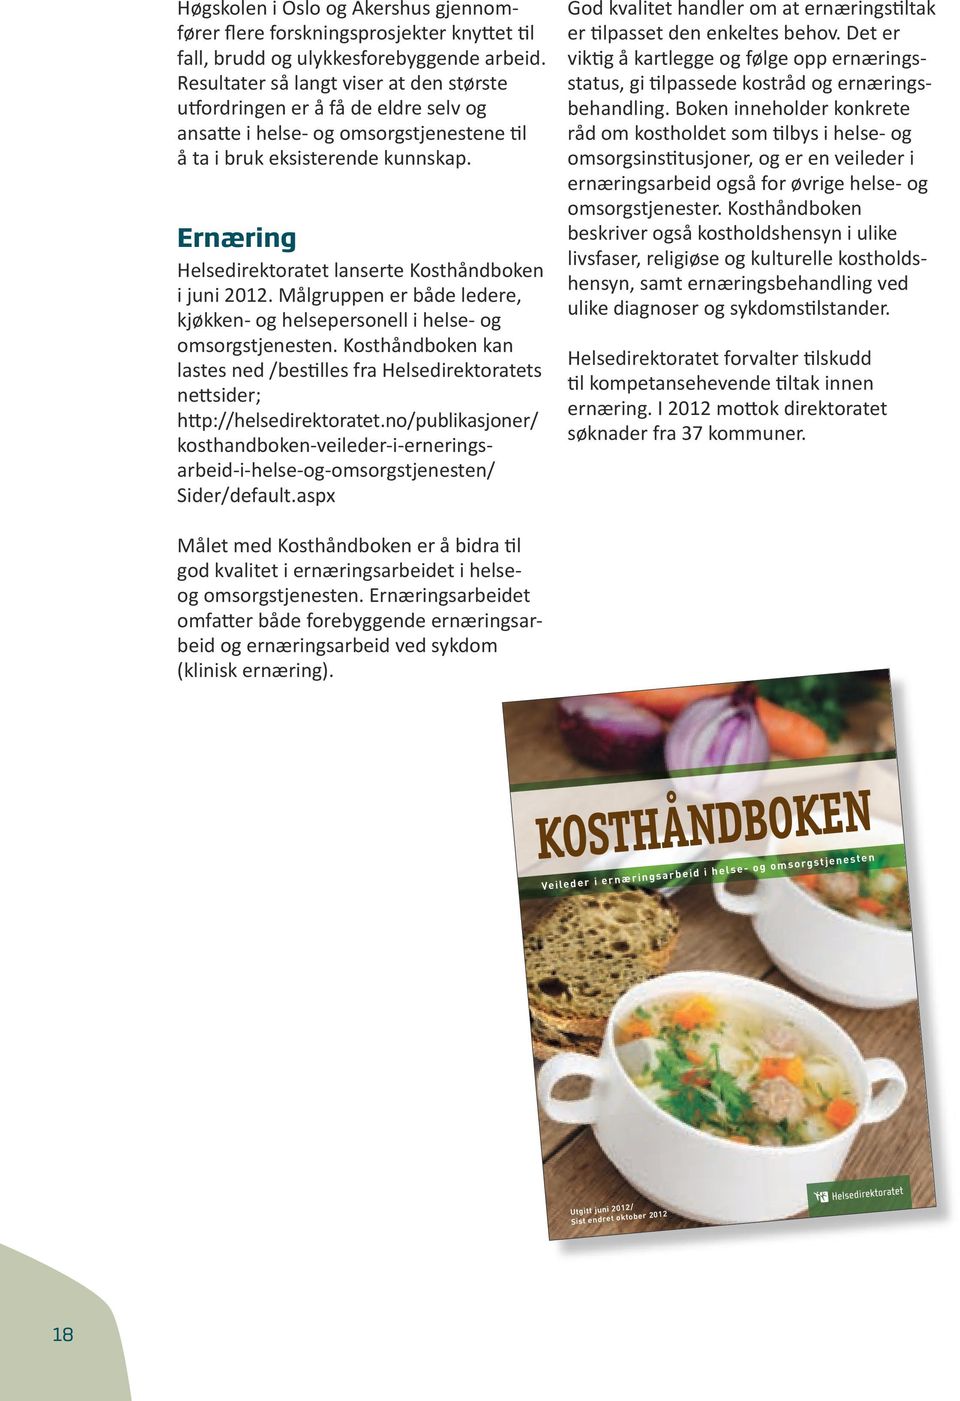 Ernæring Helsedirektoratet lanserte Kosthåndboken i juni 2012. Målgruppen er både ledere, kjøkken- og helsepersonell i helse- og omsorgstjenesten.